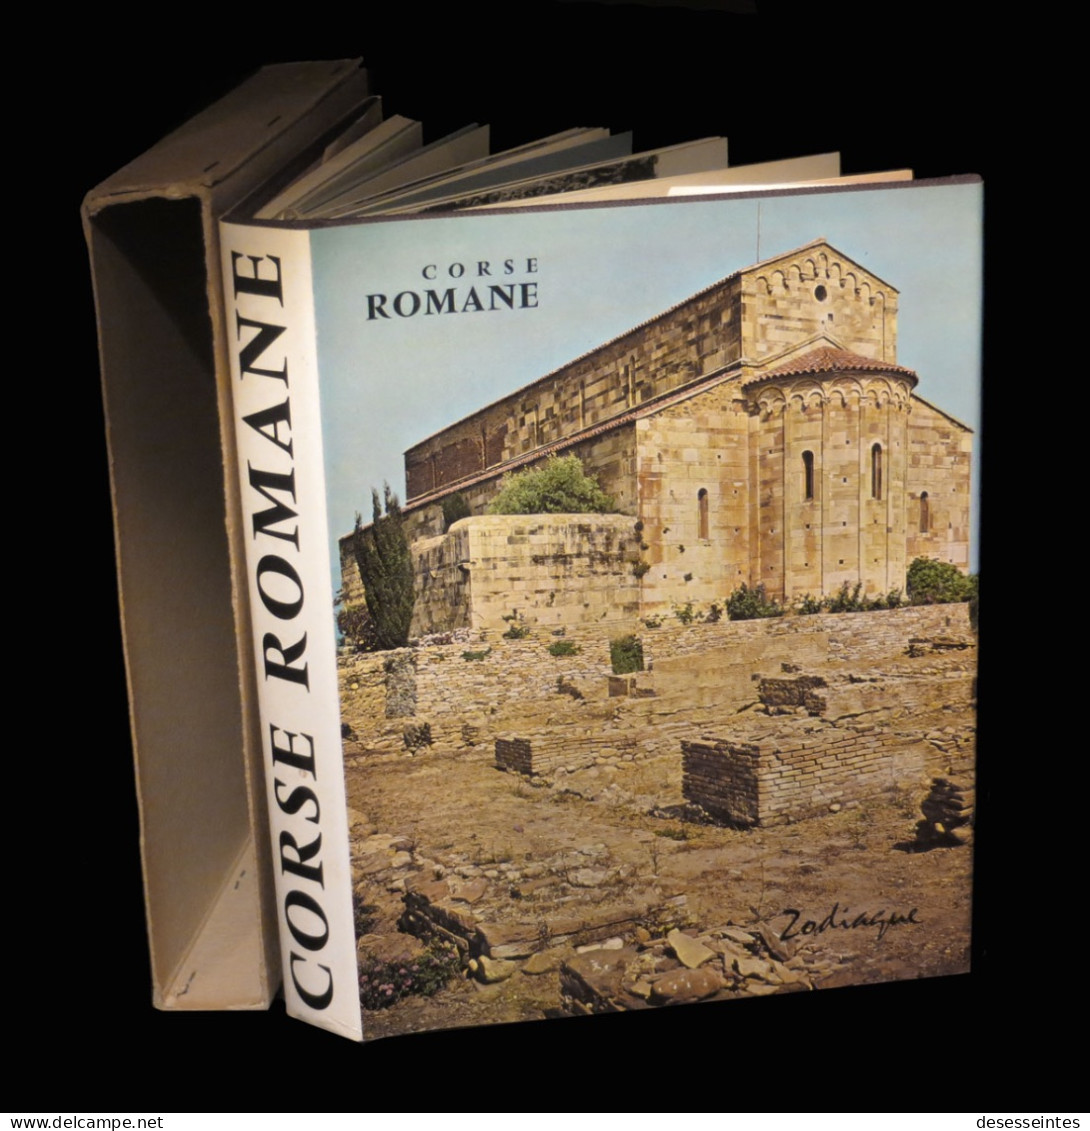 [ZODIAQUE ARCHITECTURE CORTE FIGARI BONIFACIO] Corse Romane. - Corse